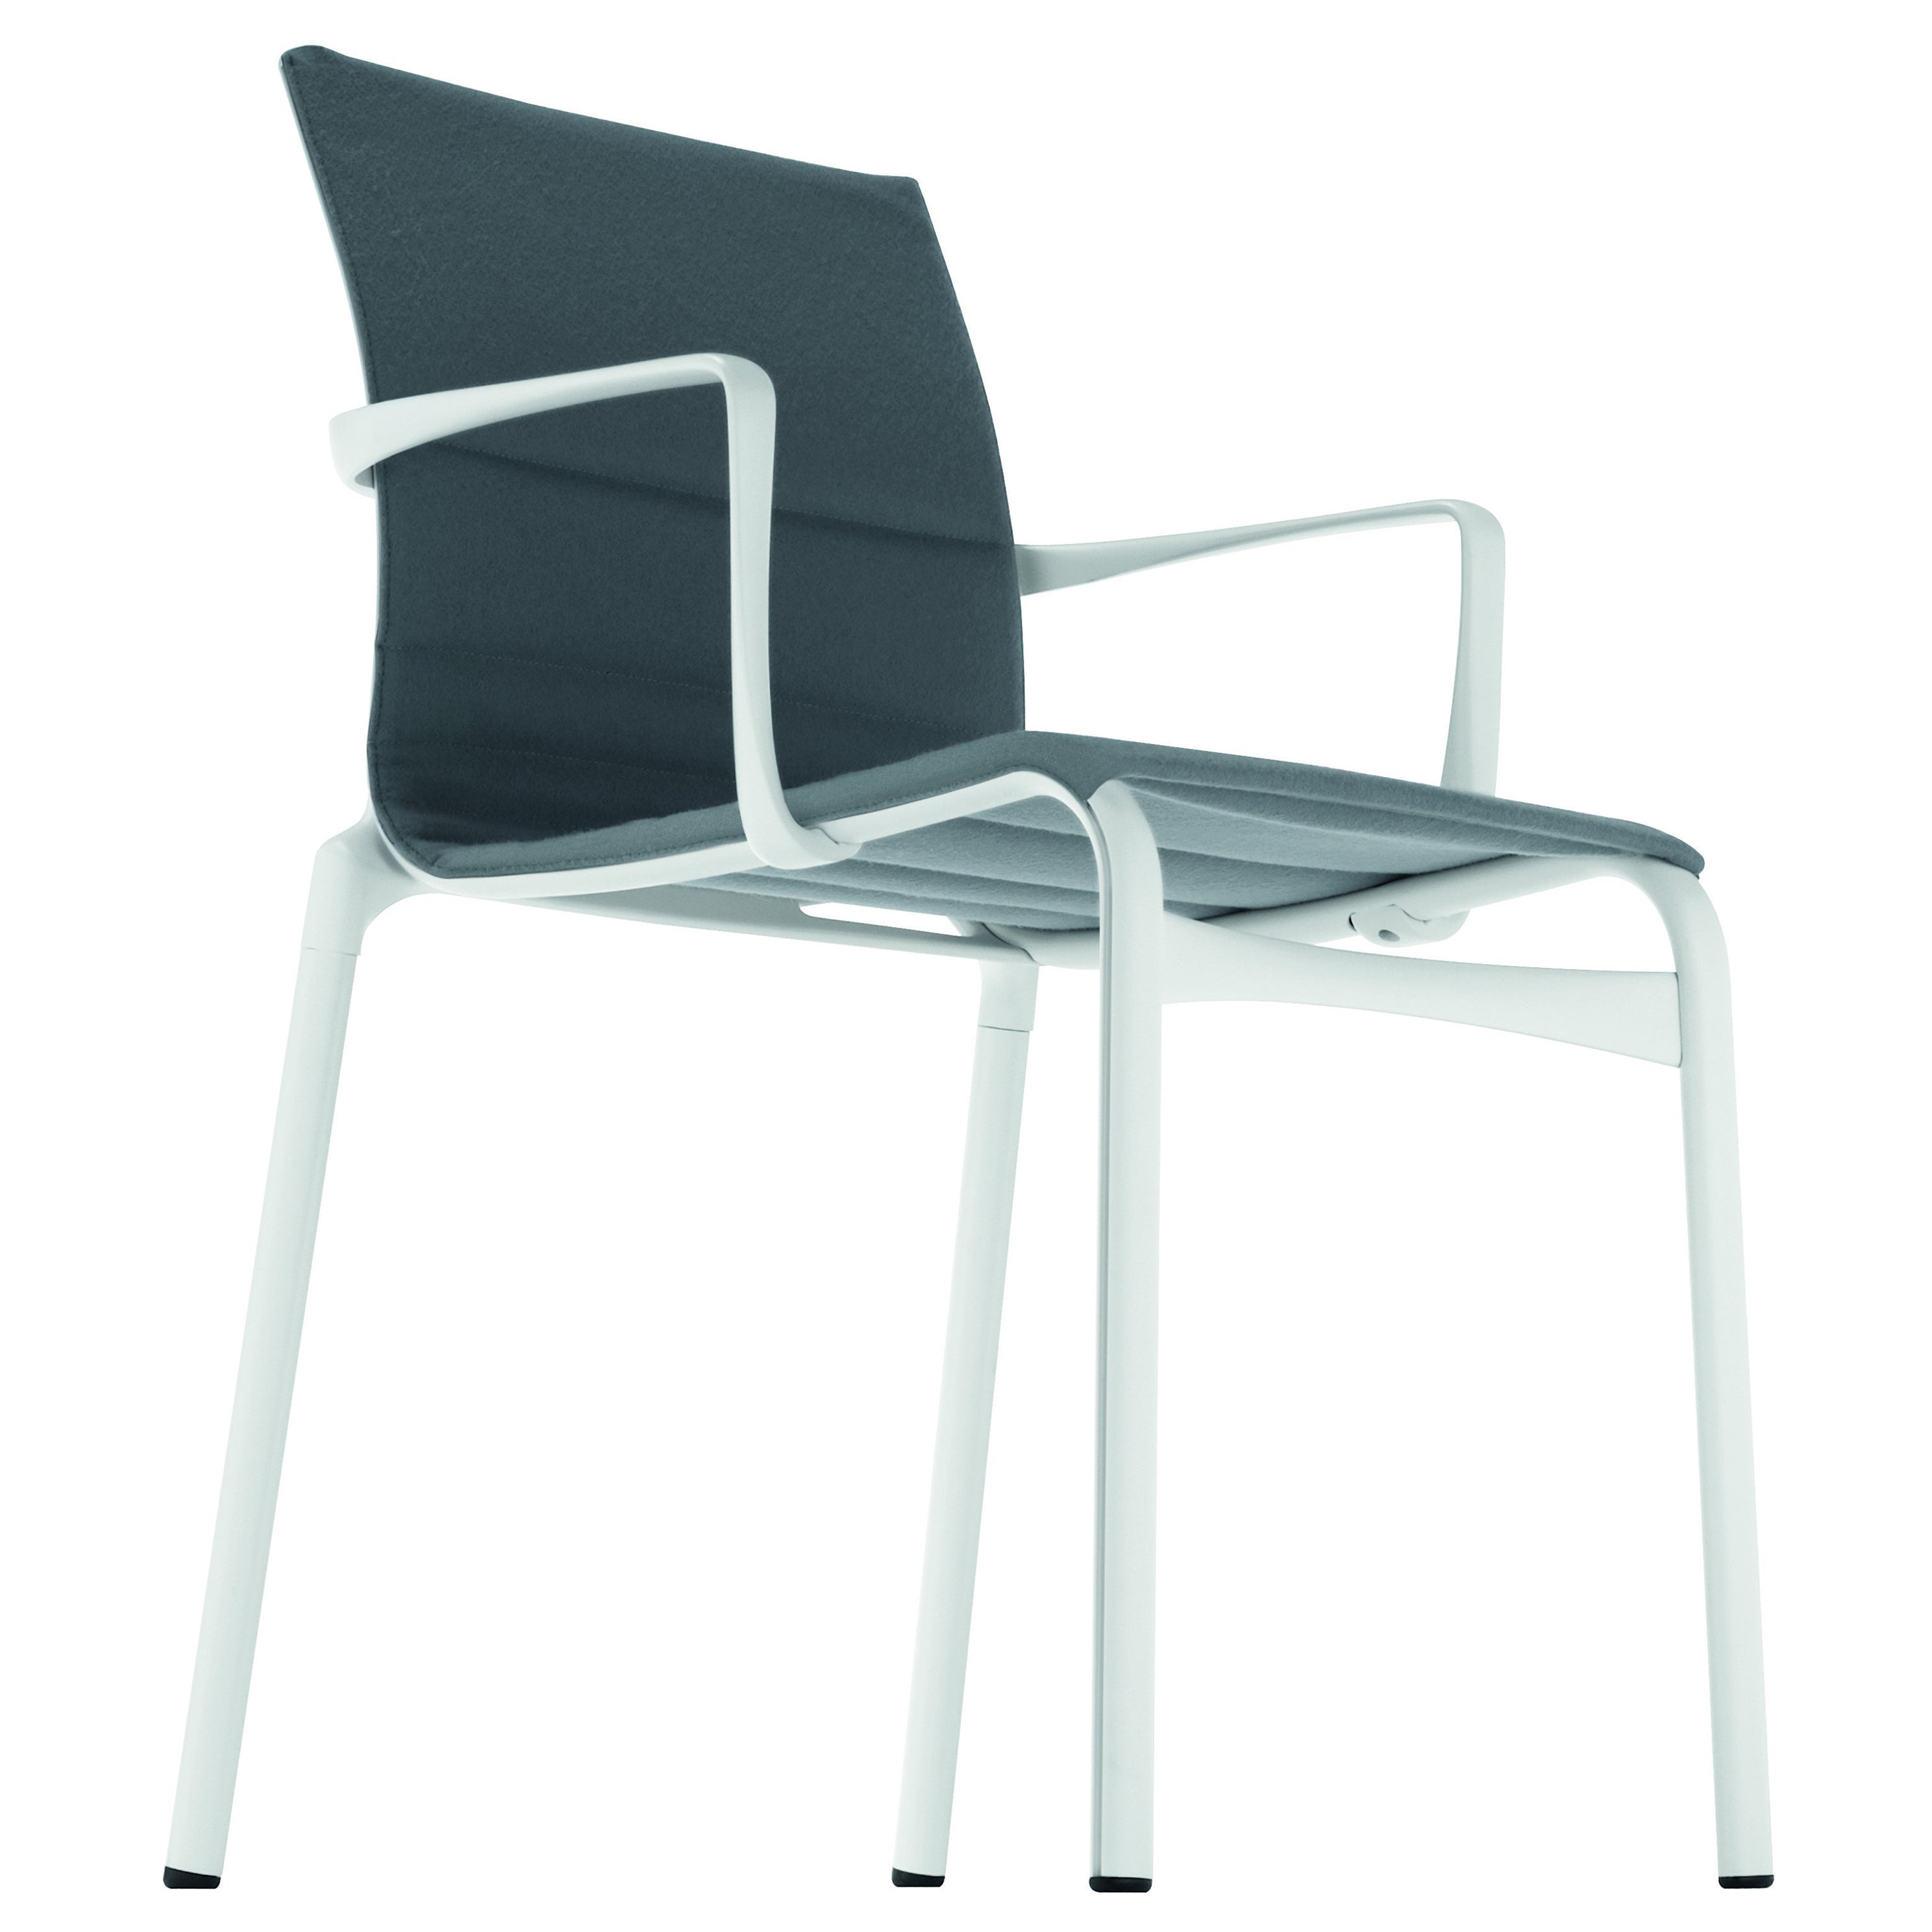 Alias Bigframe 44, Sessel mit Polsterung und weiß lackiertem Aluminiumrahmen